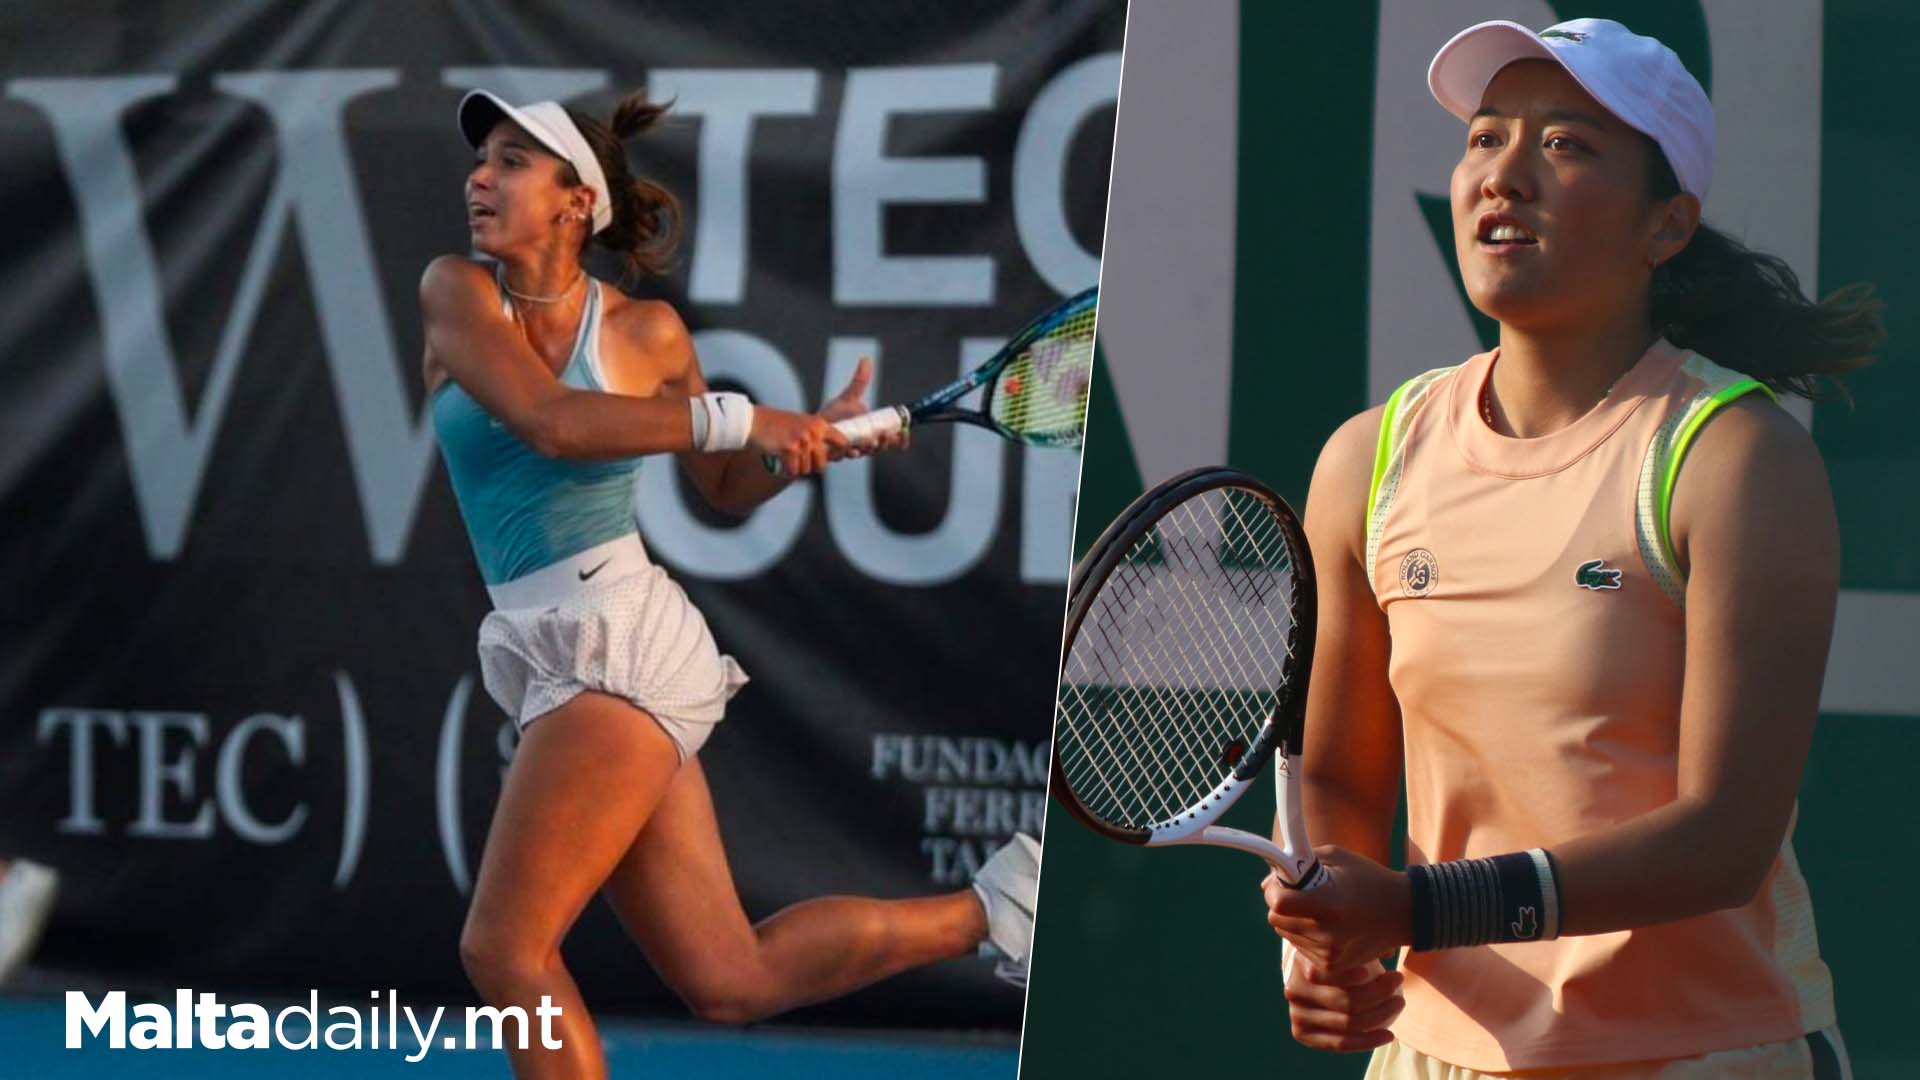 Francesca Curmi Beats Tennis Player Who Beat Serena Williams